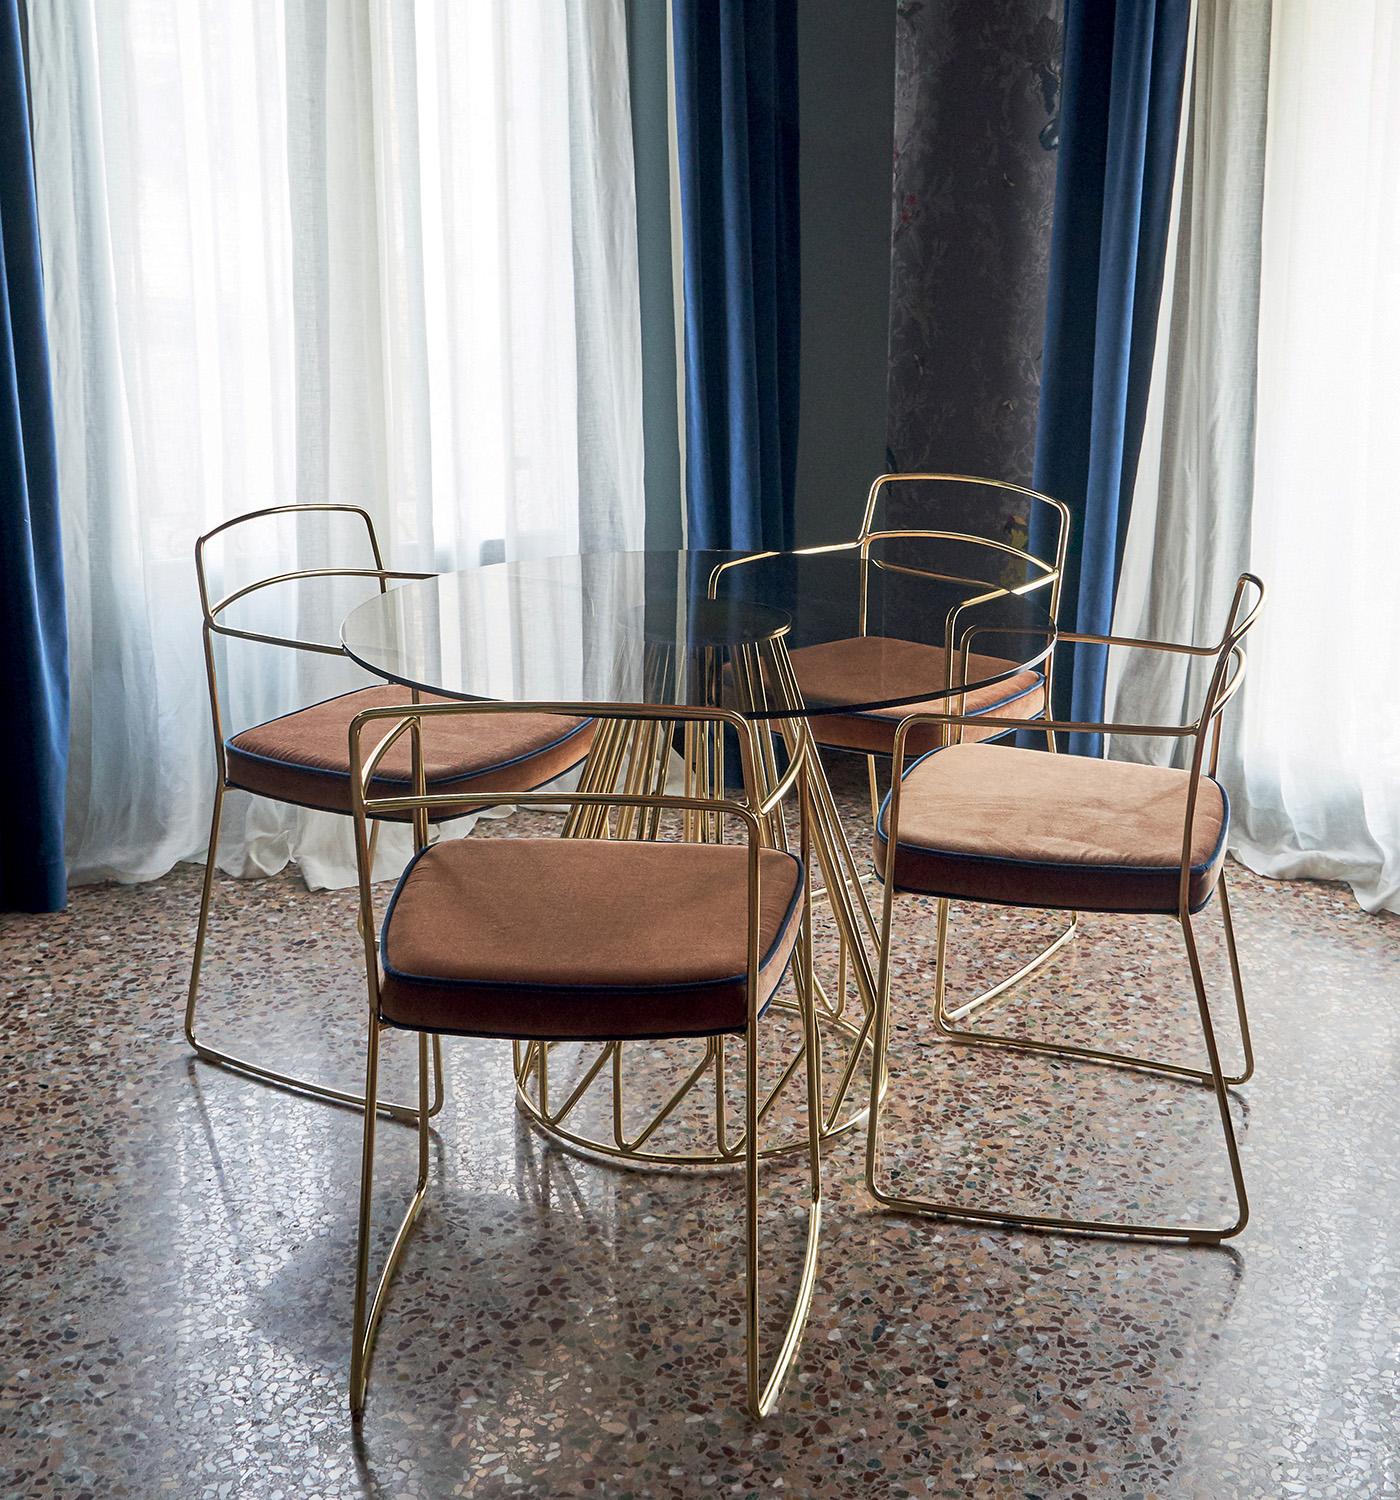 italien Table contemporaine minimaliste dorée, vert Calacatta, fabriquée en Italie par LapiegaWD en vente